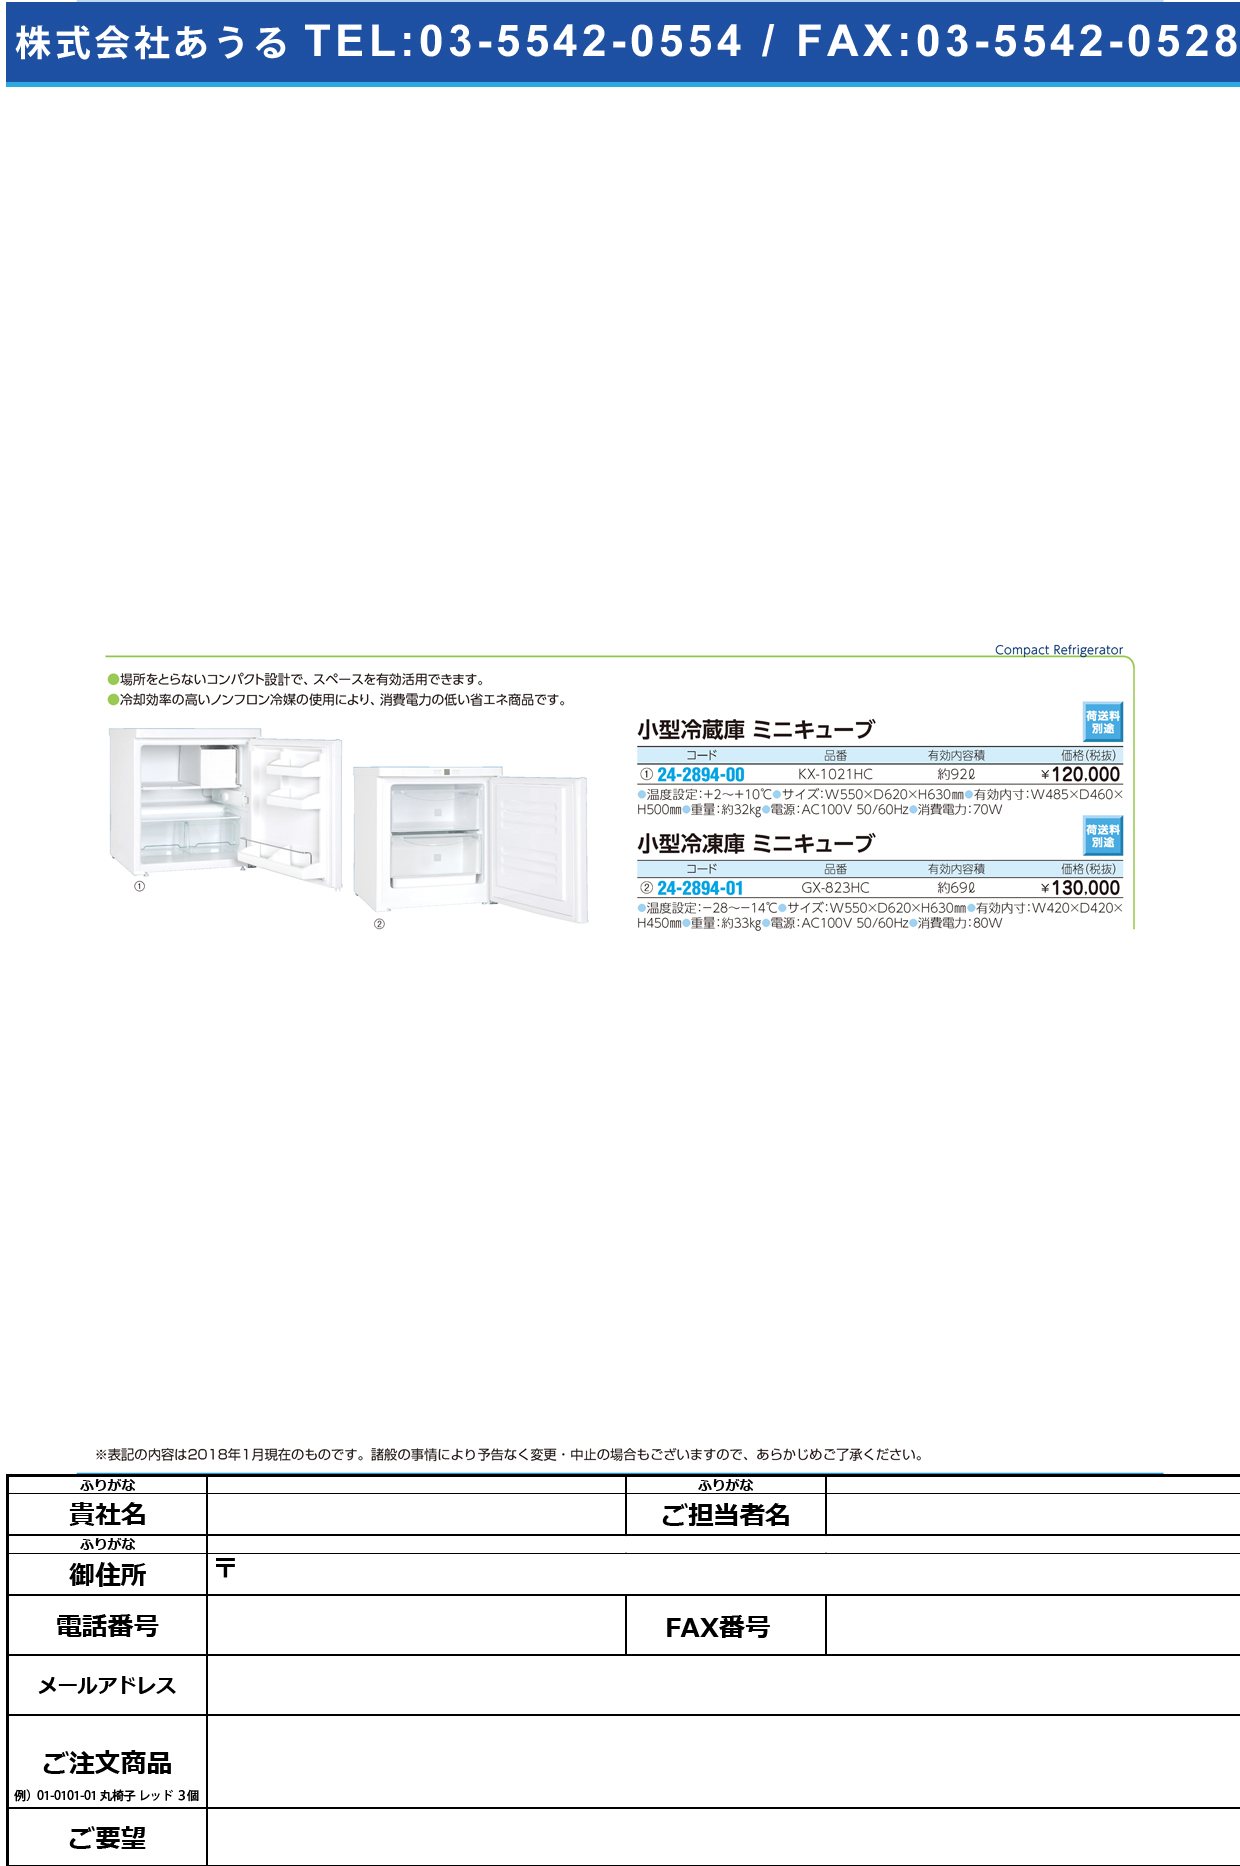 (24-2894-00)小型冷蔵庫ミニキューブ KX-1021HC(92L) ｺｶﾞﾀﾚｲｿﾞｳｺﾐﾆｷｭｰﾌﾞ(日本フリーザー)【1台単位】【2018年カタログ商品】